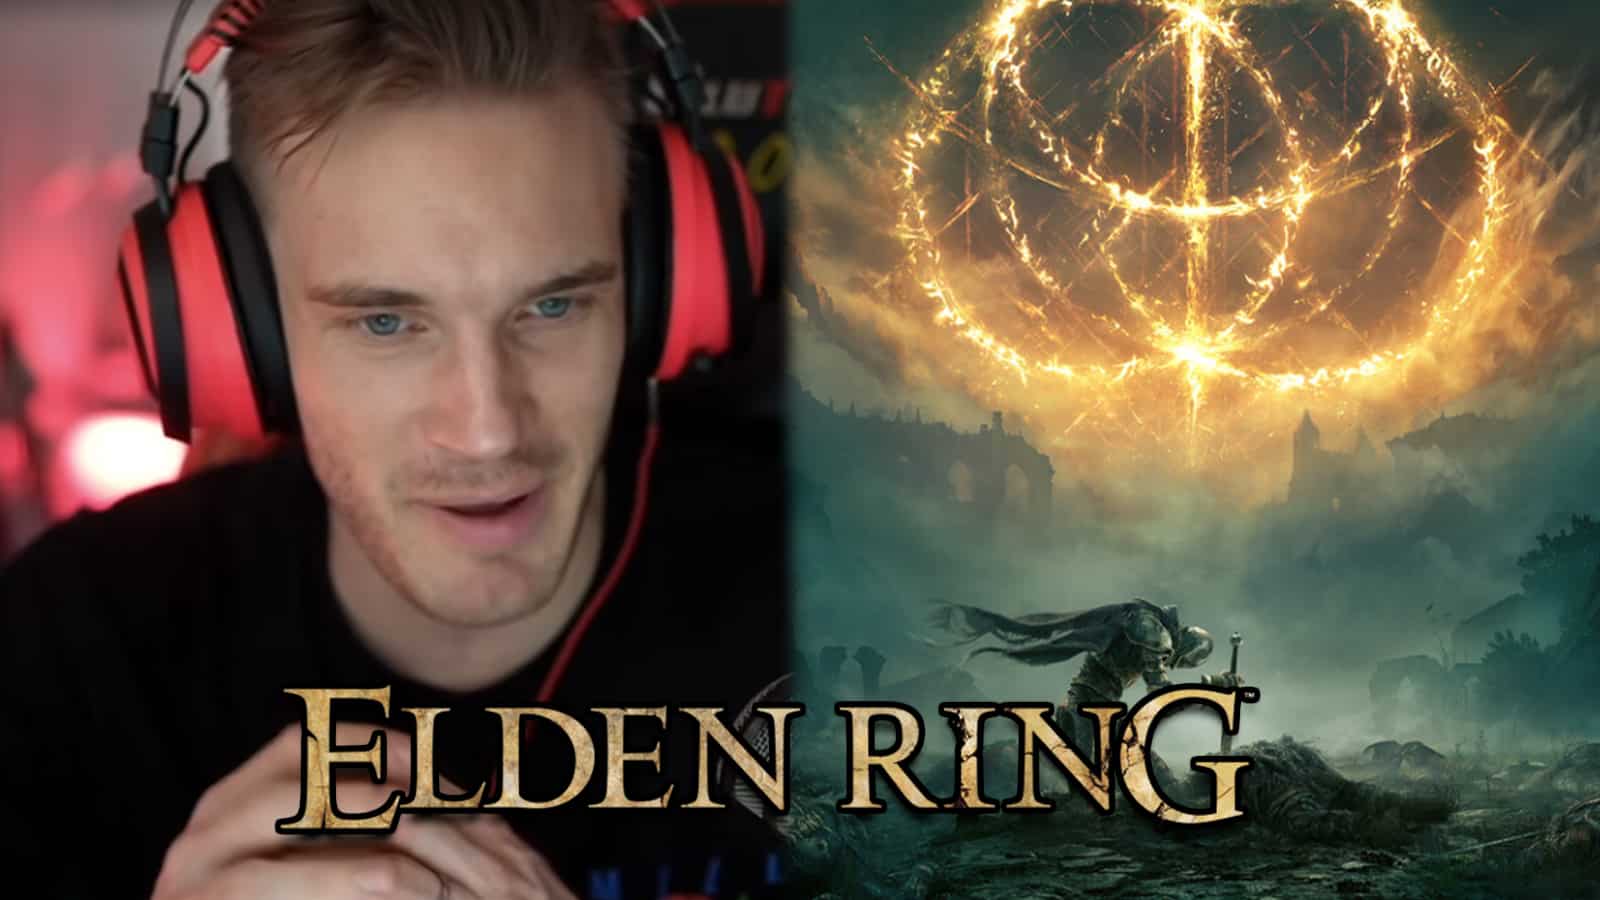 YouTuber PewDiePie next to Elden Ring artwork screenshot.